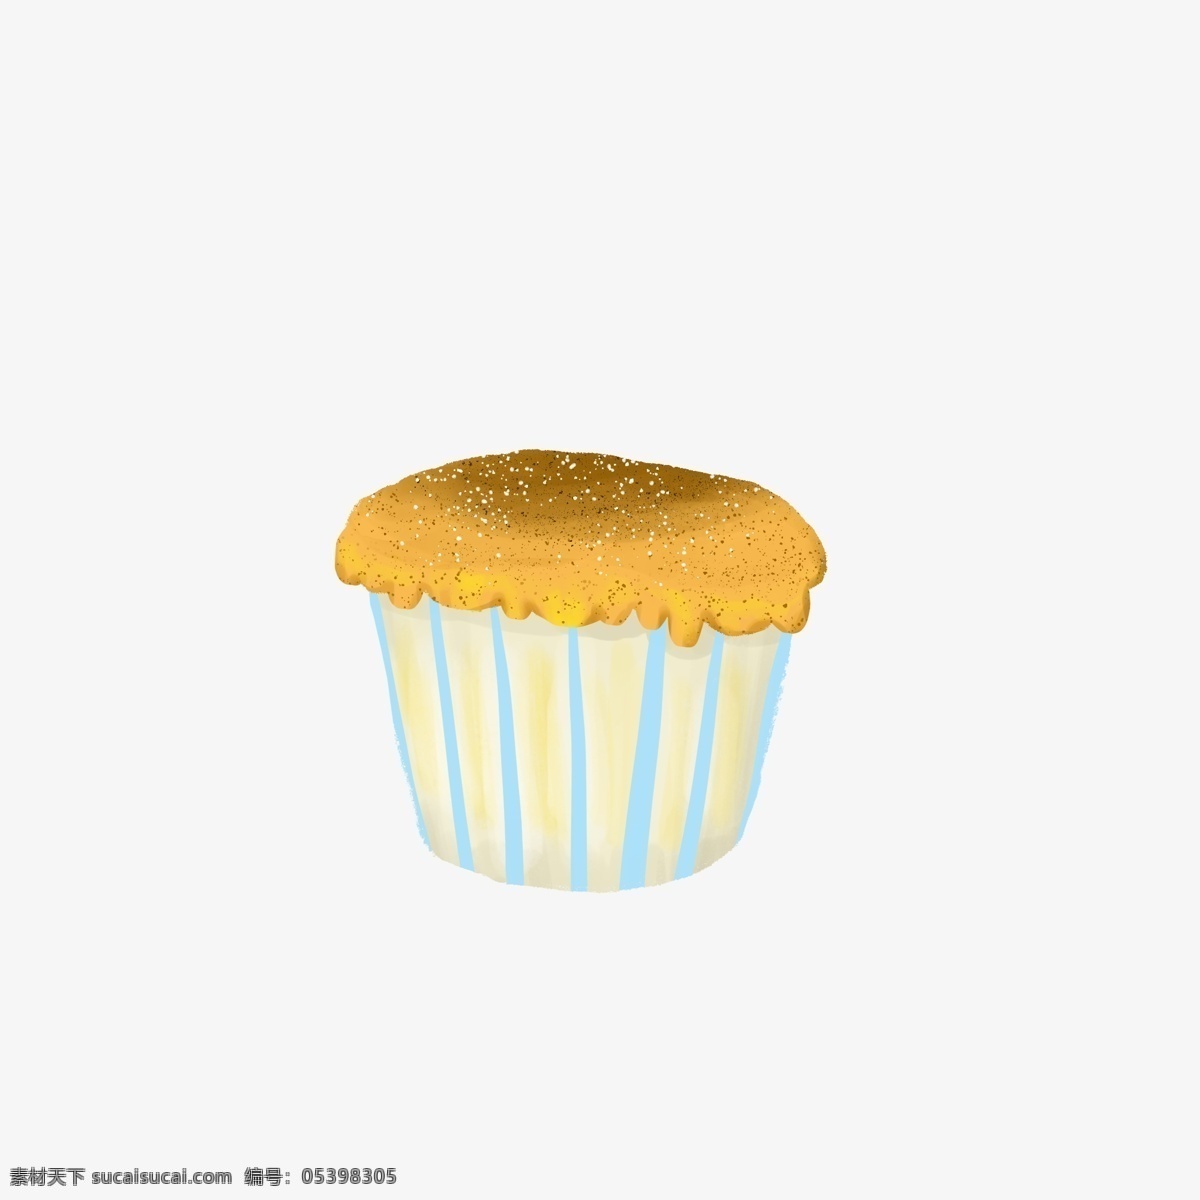 简约 手绘 小 蛋糕 海报 插画 免 抠 元素 小蛋糕 黄色 纸杯蛋糕 美食 食物 甜点 甜品 下午茶 小清新